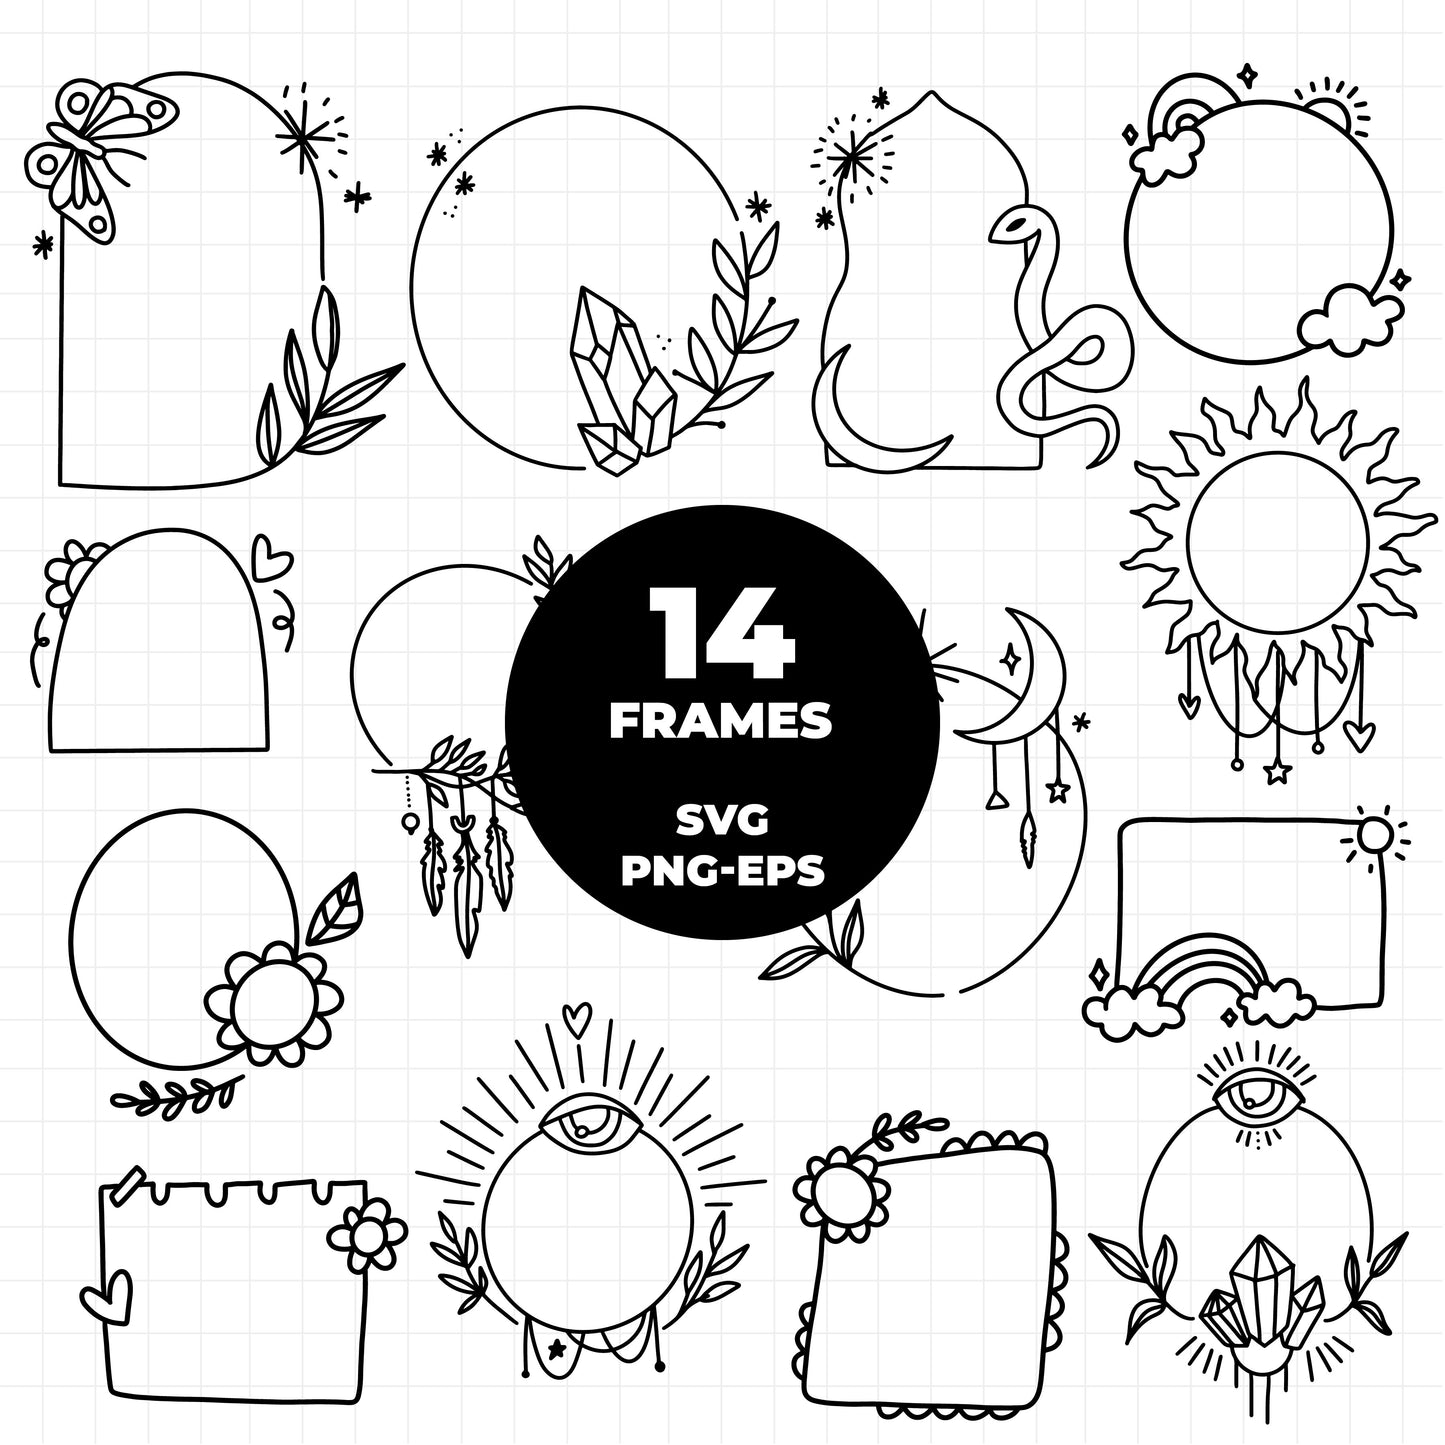 COD1377 -Doodle clipart, Frames Clipart, Aesthetic frames Clipart, frames printable, doodle frame clipart, doodle svg